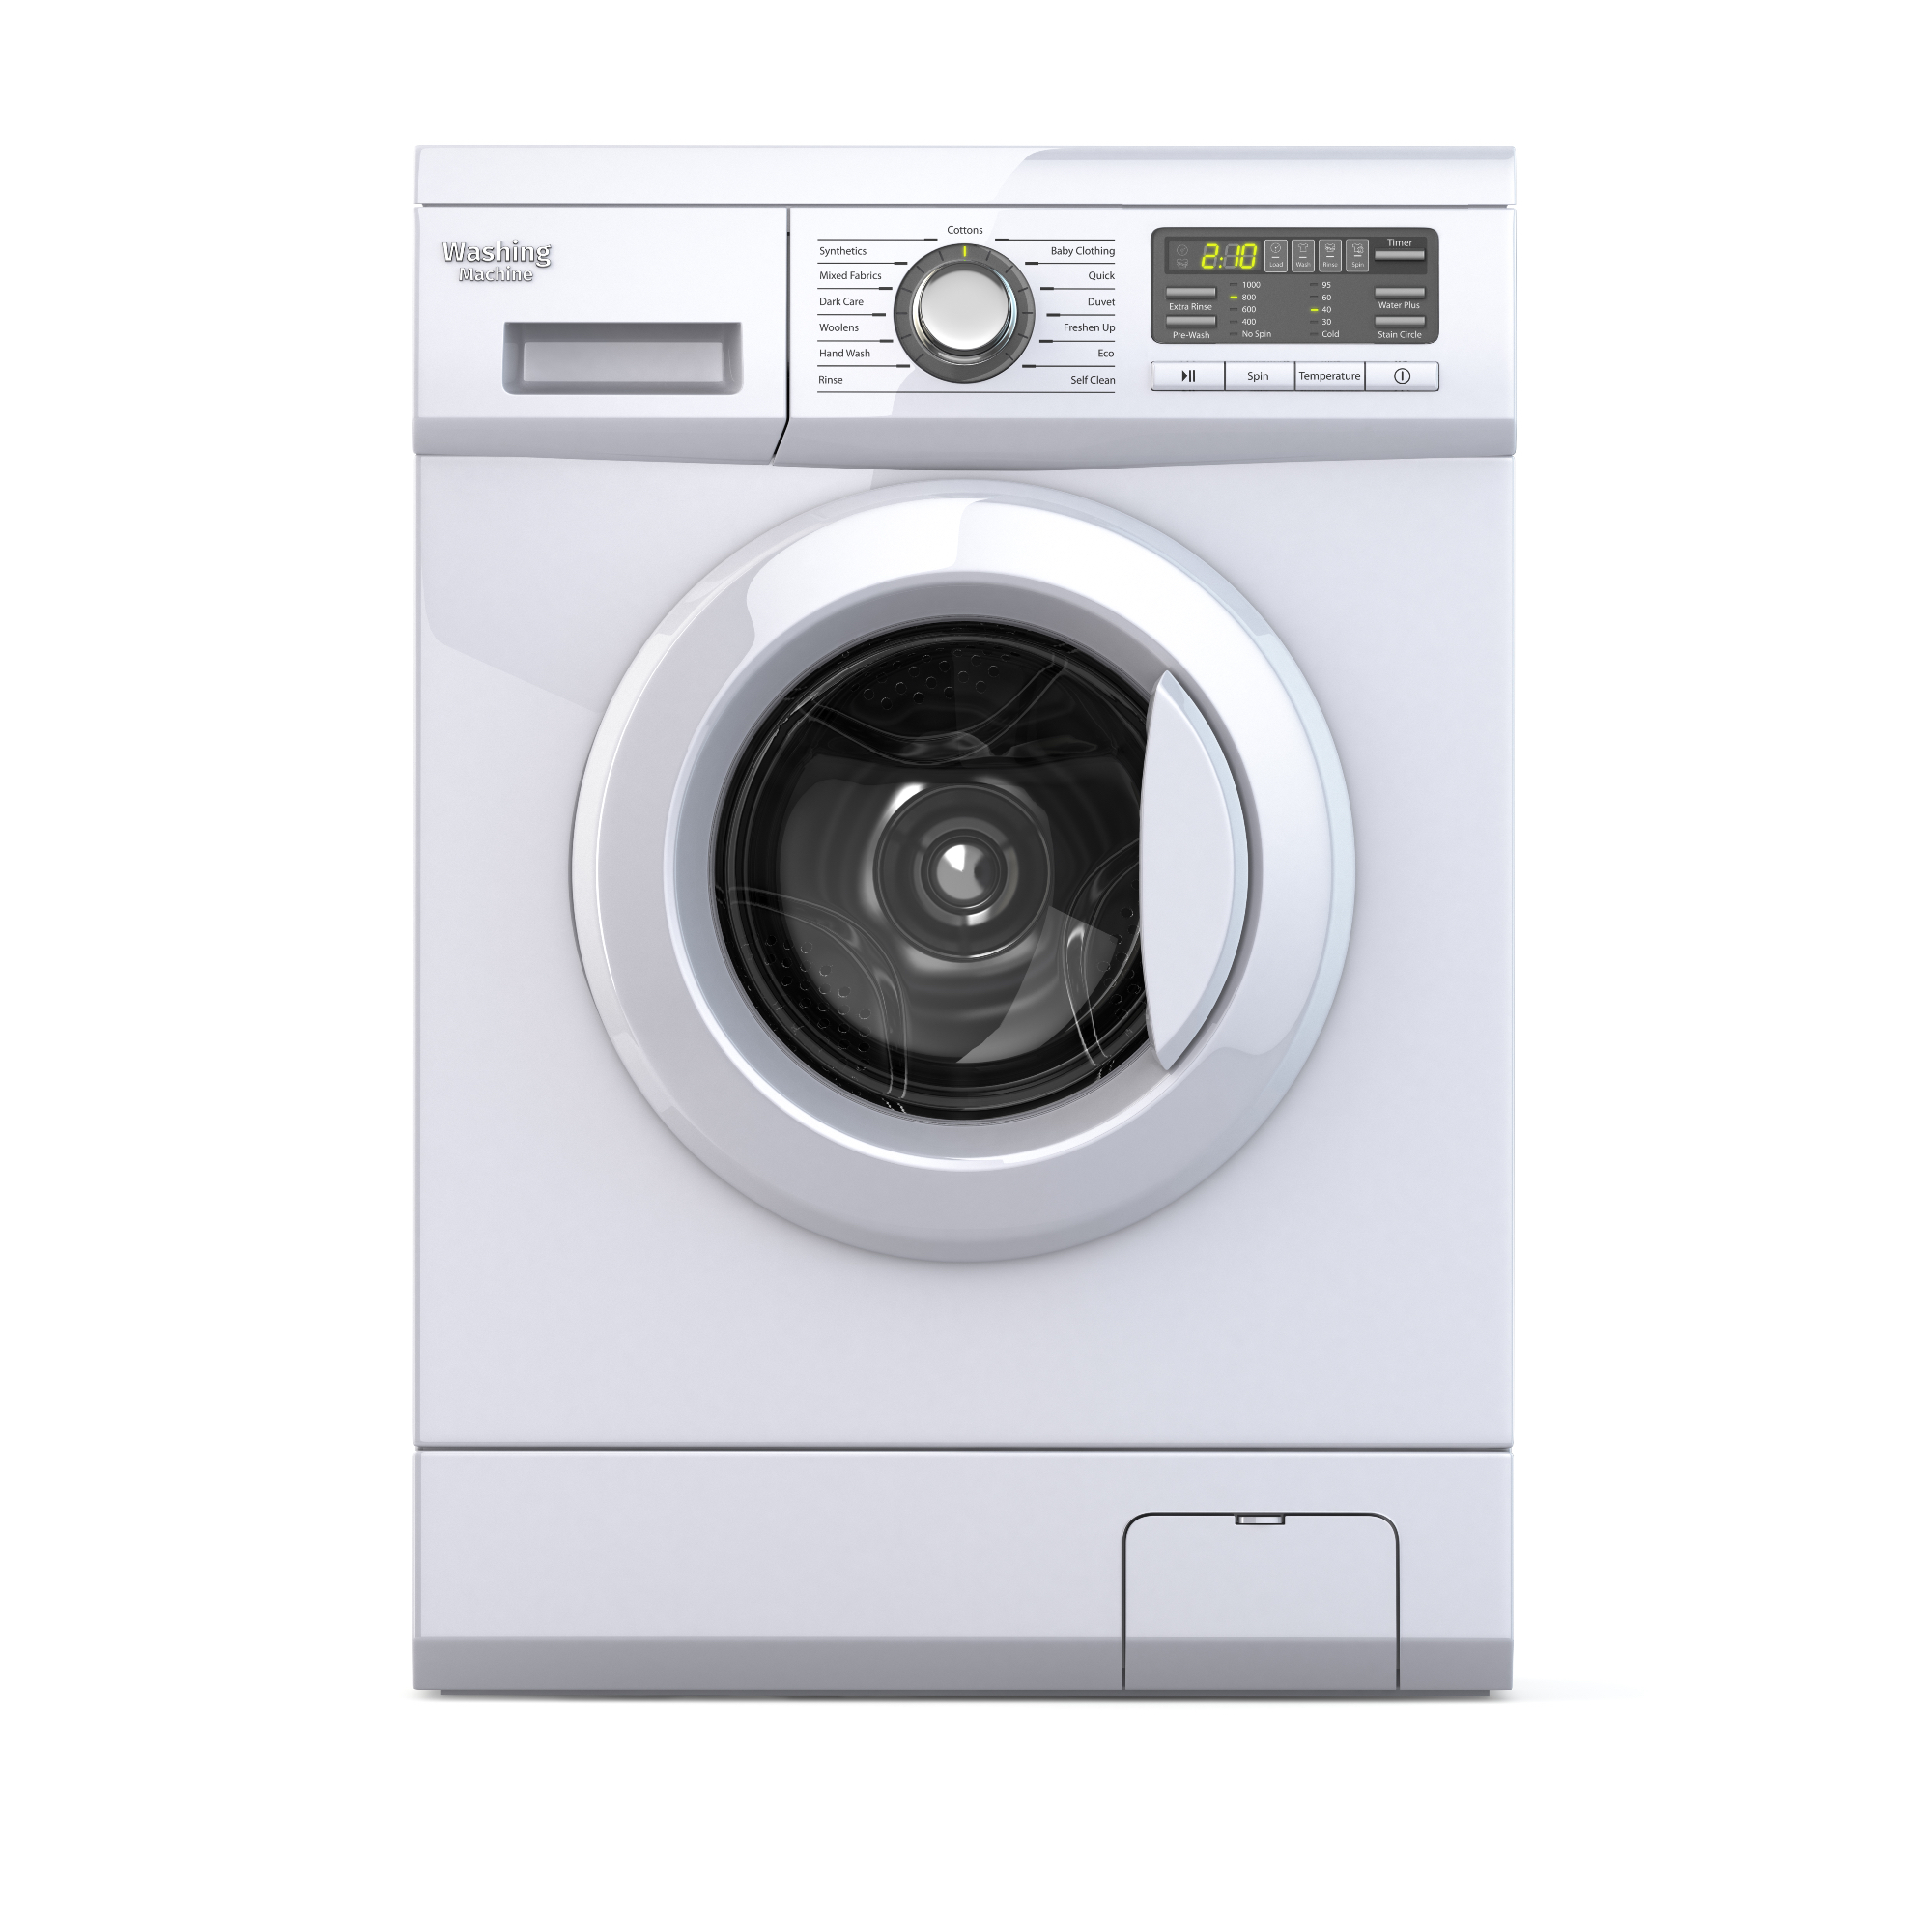 Novejši pralni stroji imajo funkcijo hitrega pranja